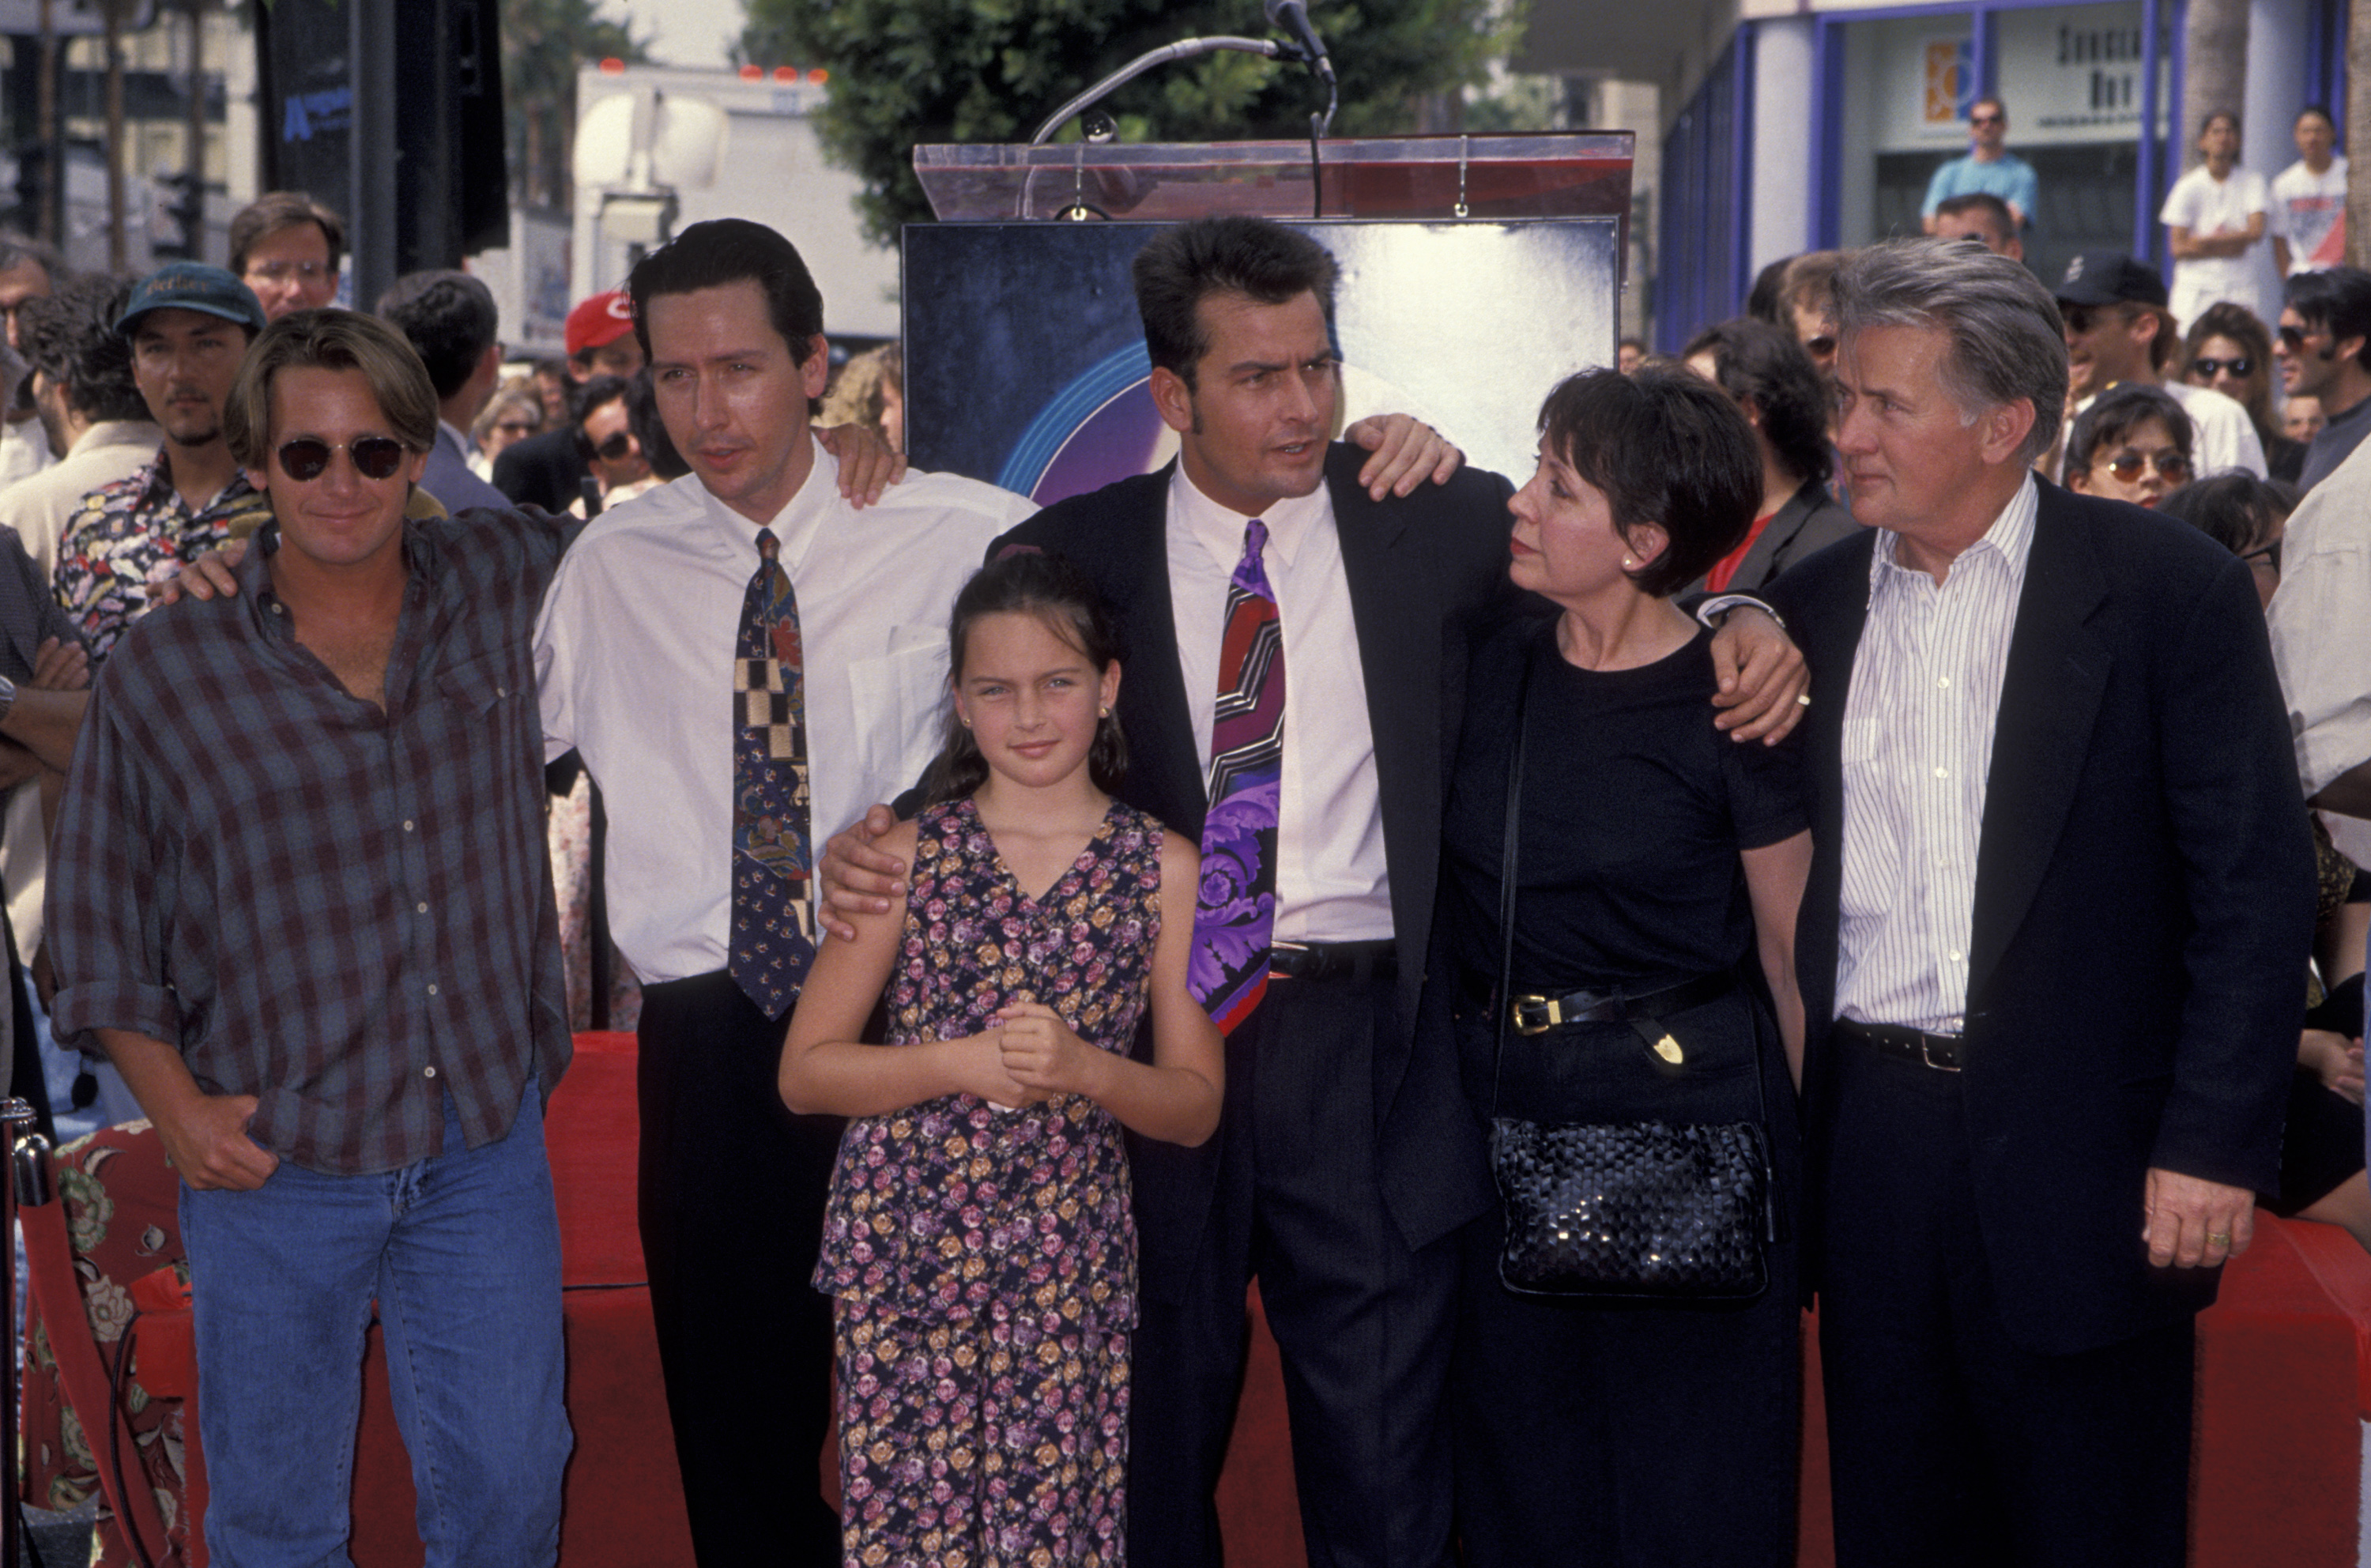 Emilio Estevez, Ramone Estevez, Charlie Sheen, Janet und Martin Sheen bei der Ehrung von Charlie Sheen mit einem Stern auf dem Hollywood Walk of Fame am 23. September 1994 | Quelle: Getty Images